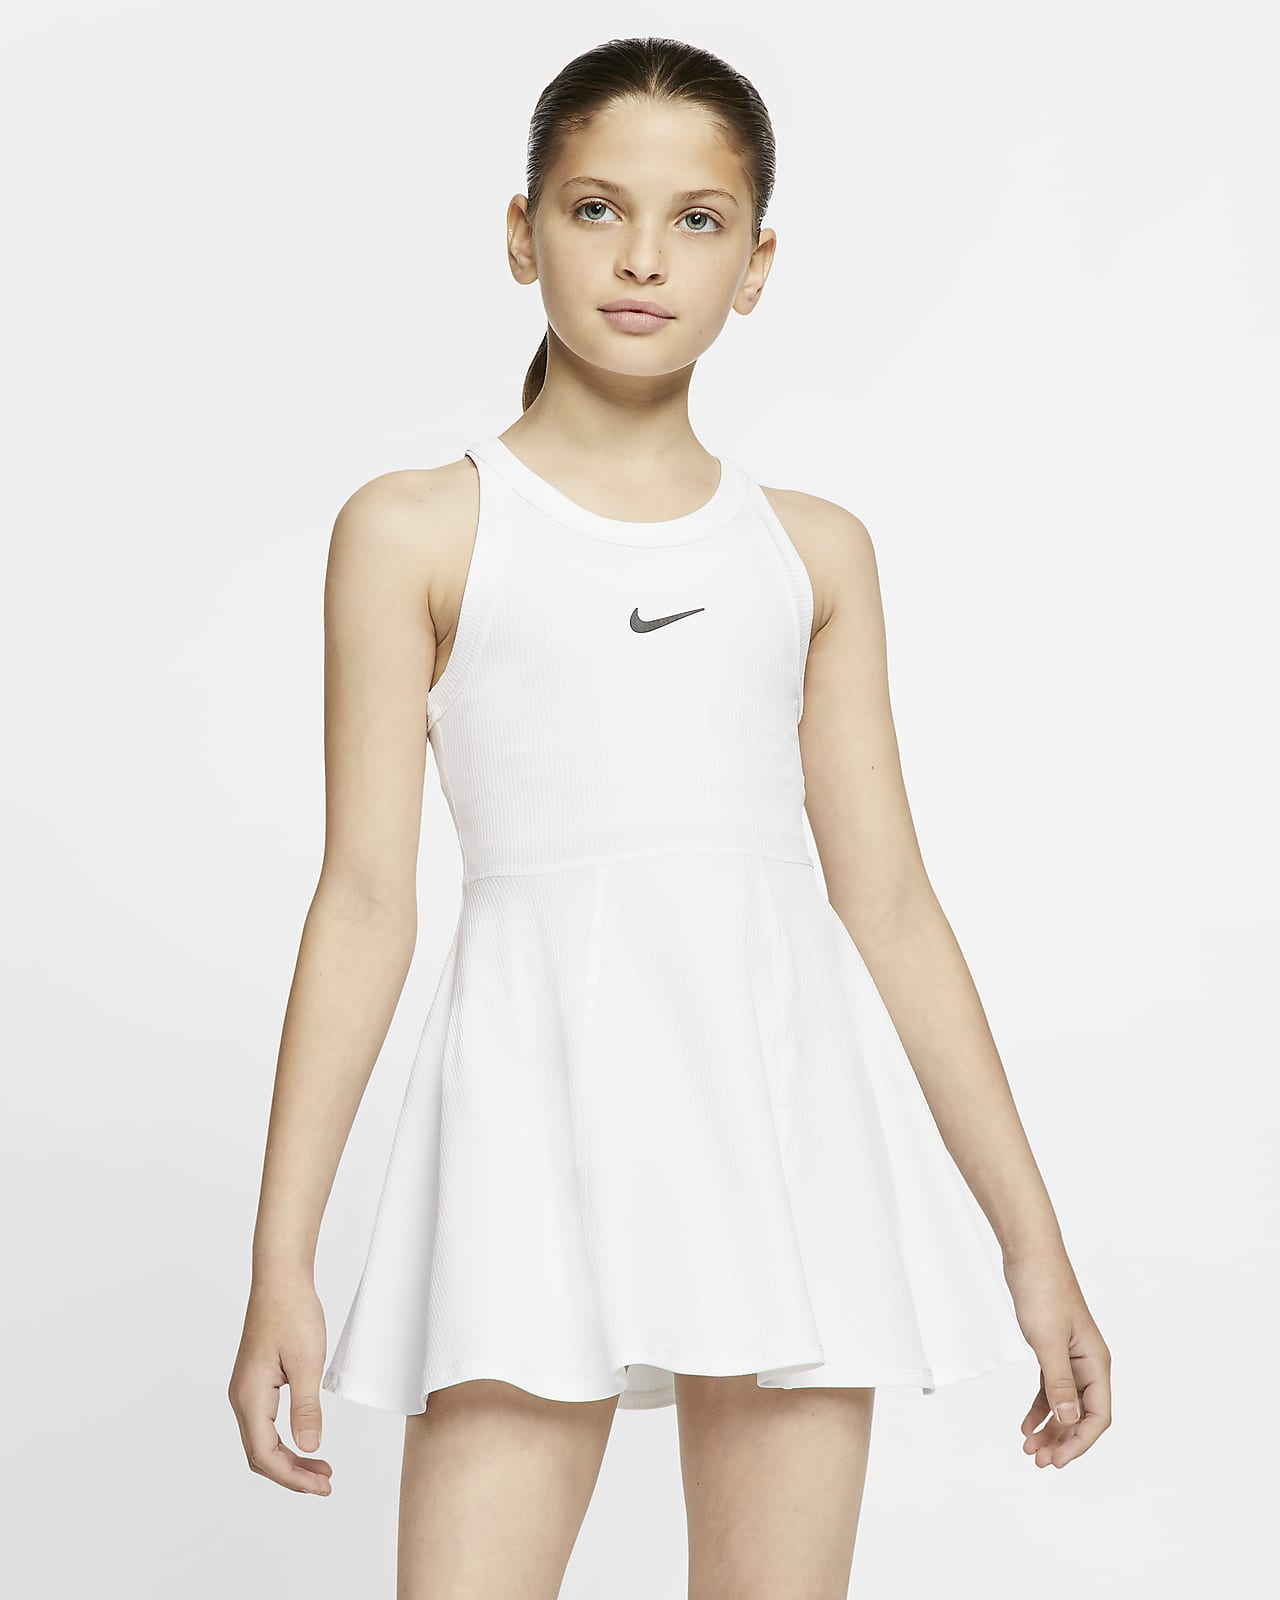 tennis dress for girl